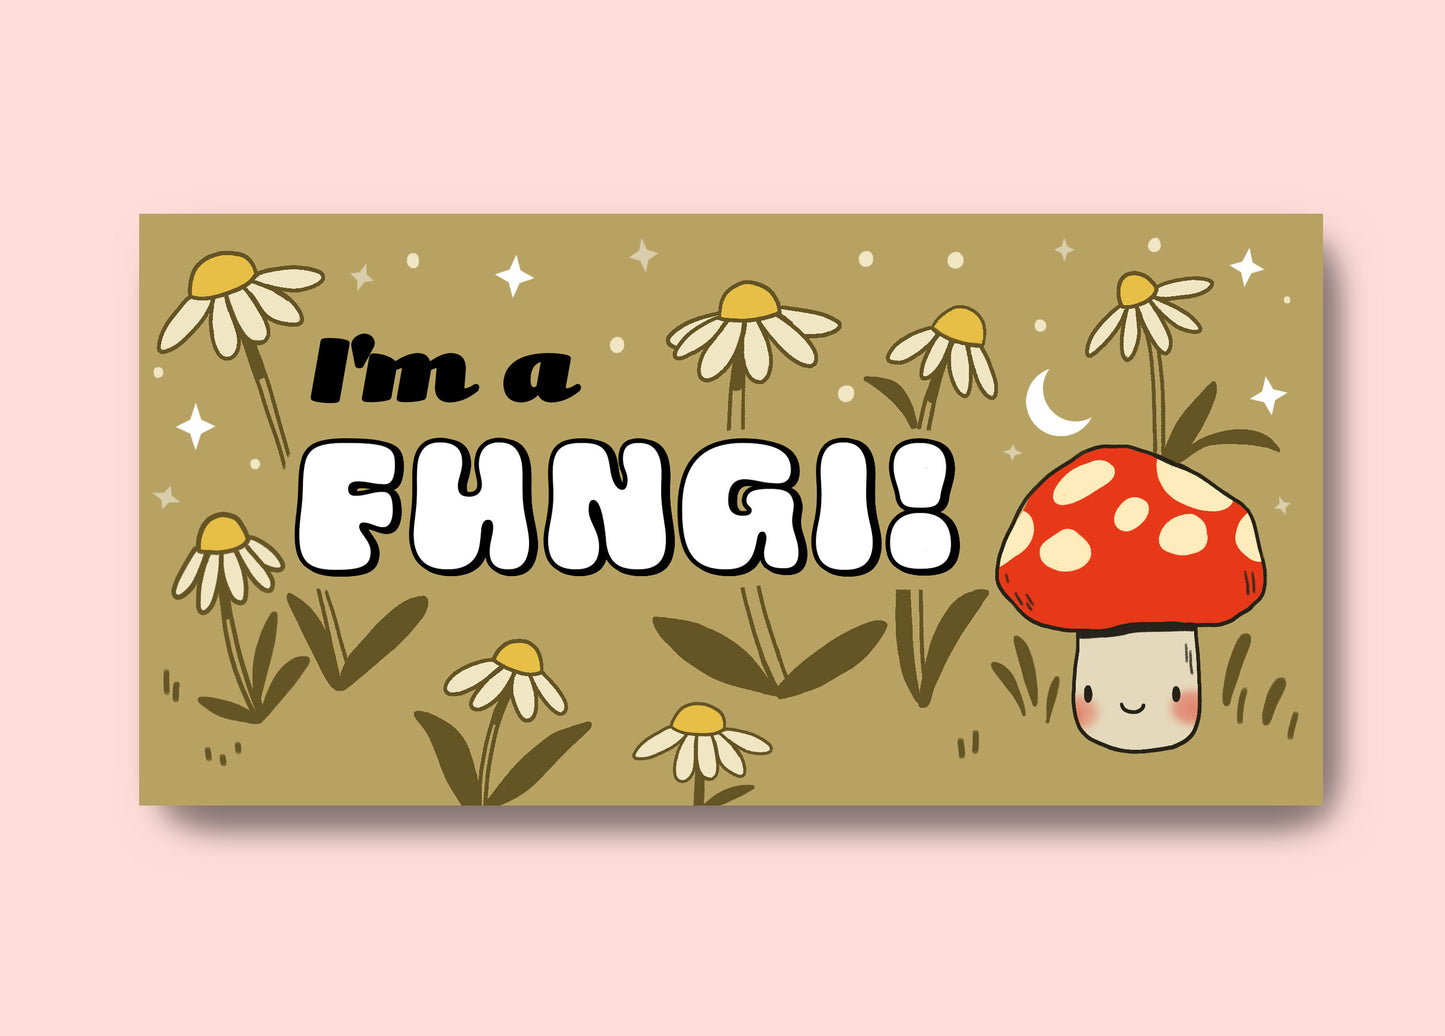 I'm a fungi mushroom bumper sticker